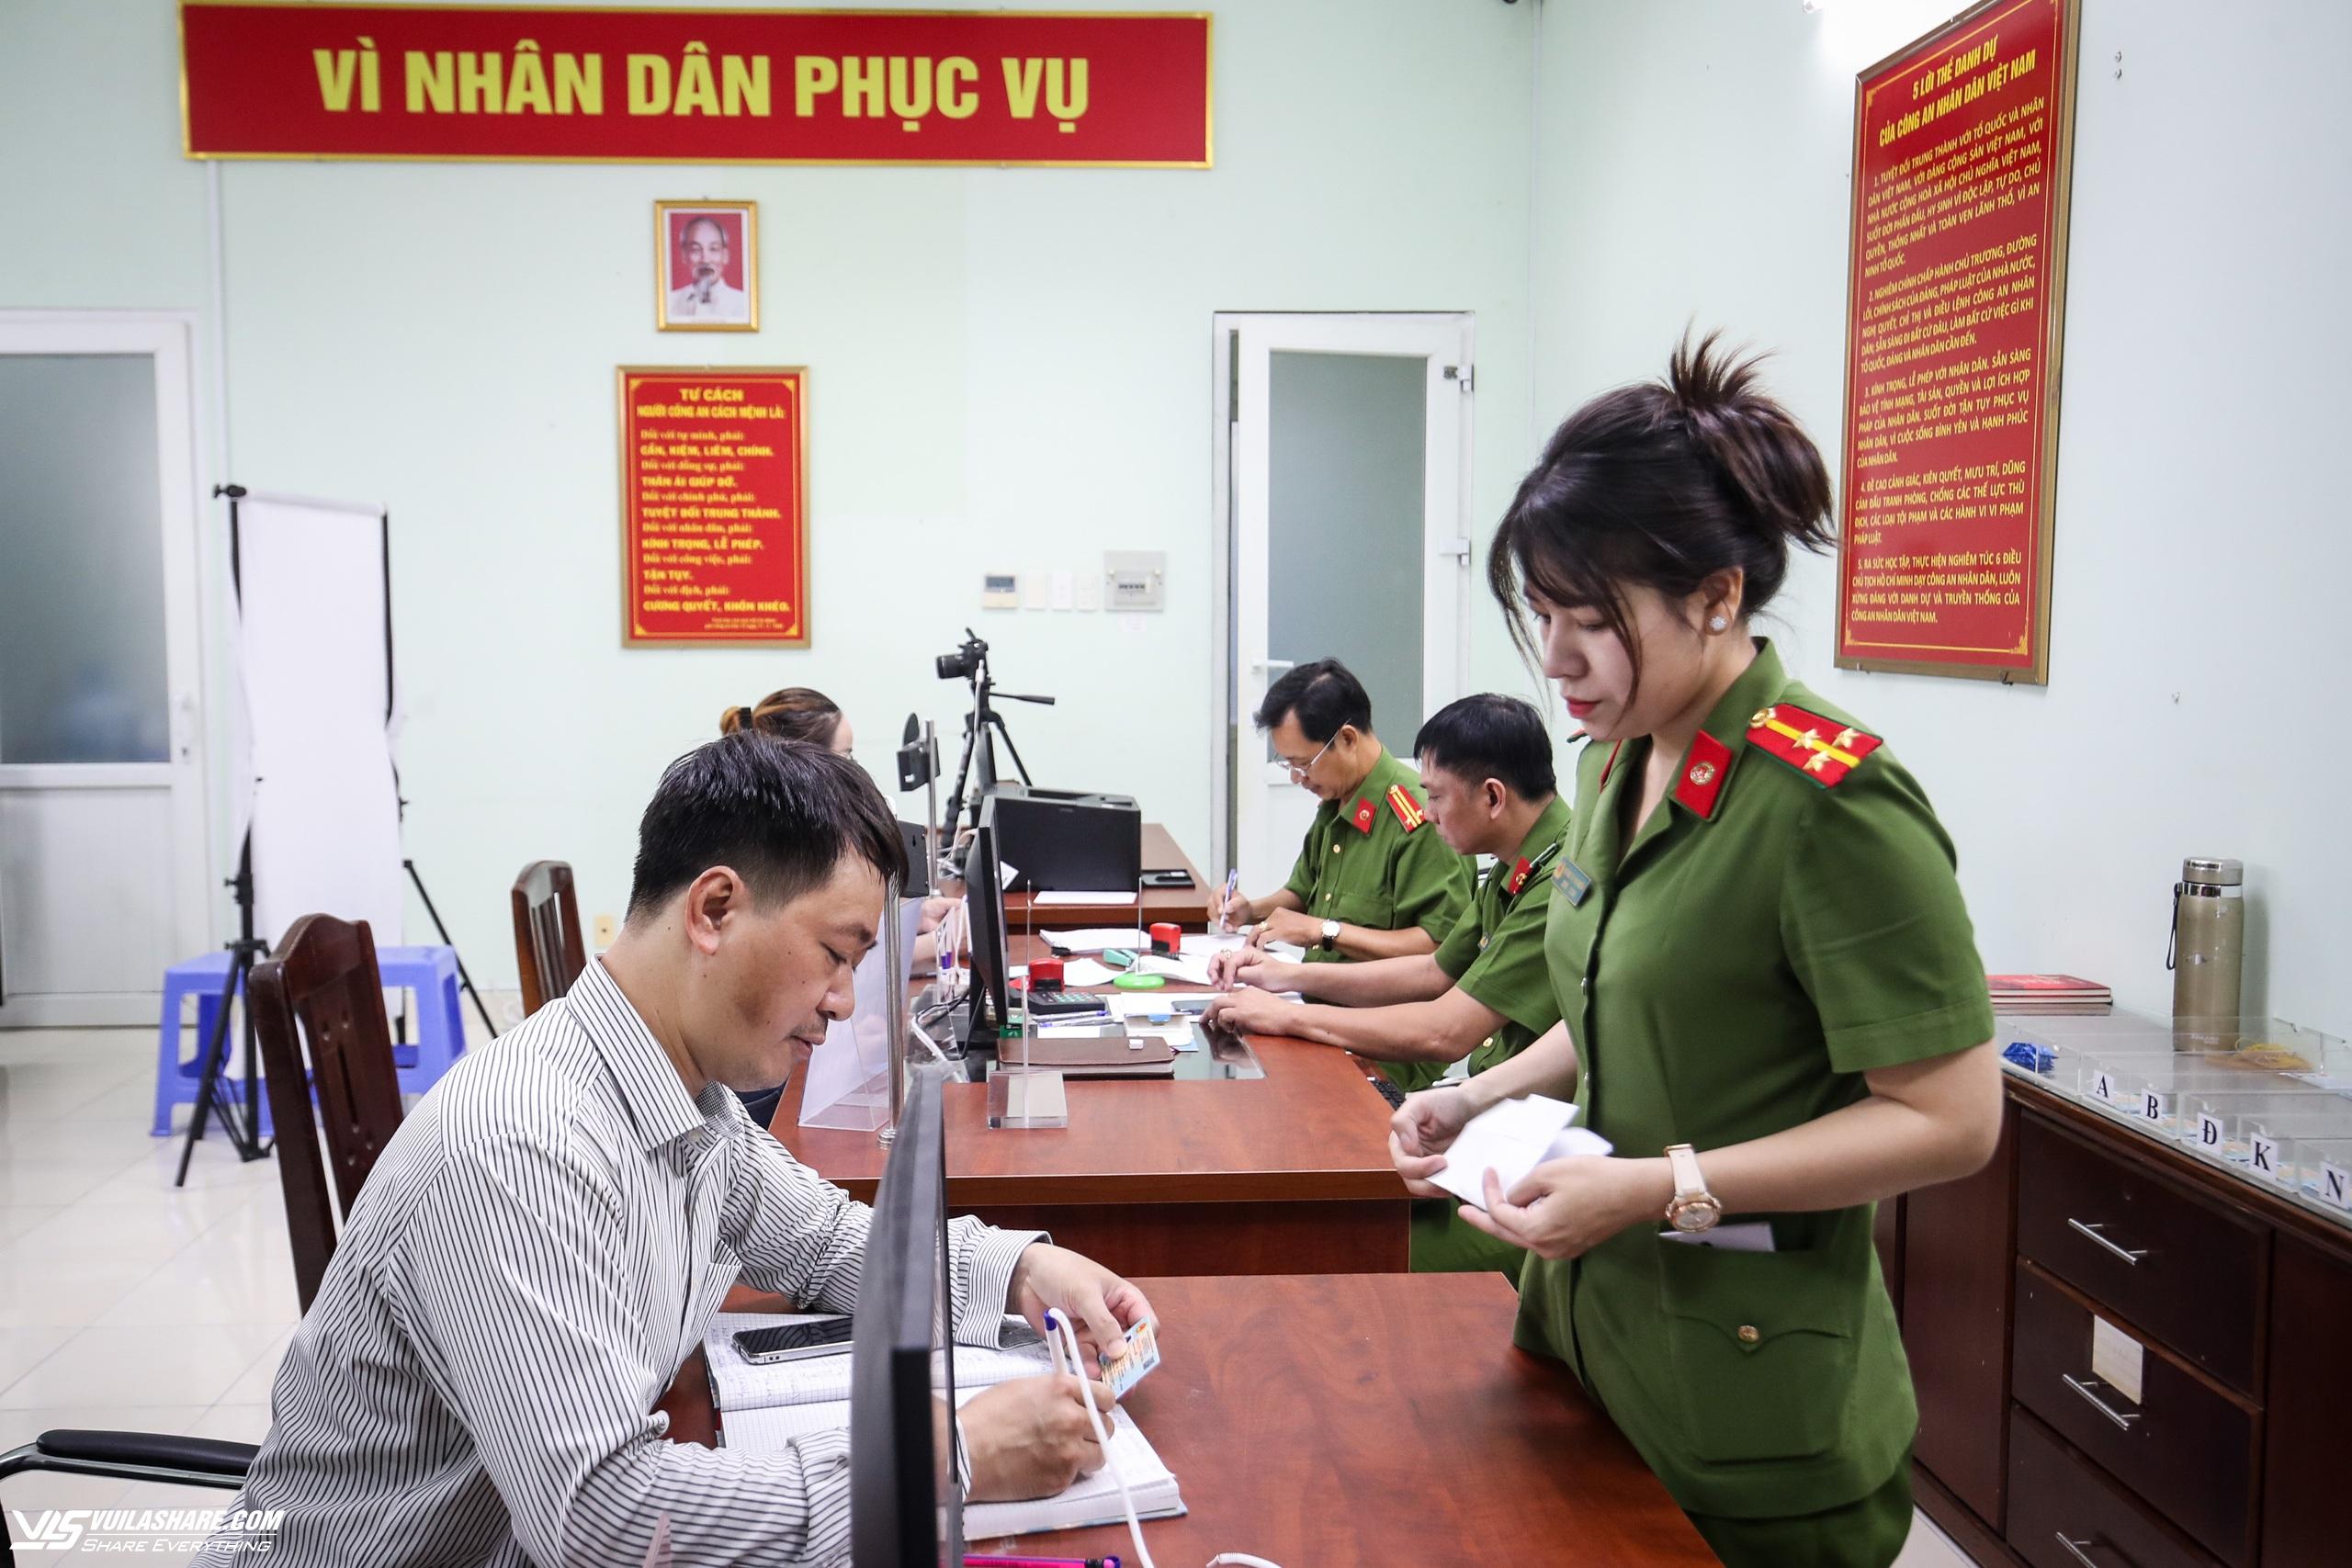 Thủ tục cấp giấy chứng nhận căn cước cho người gốc Việt Nam từ 1.7- Ảnh 1.